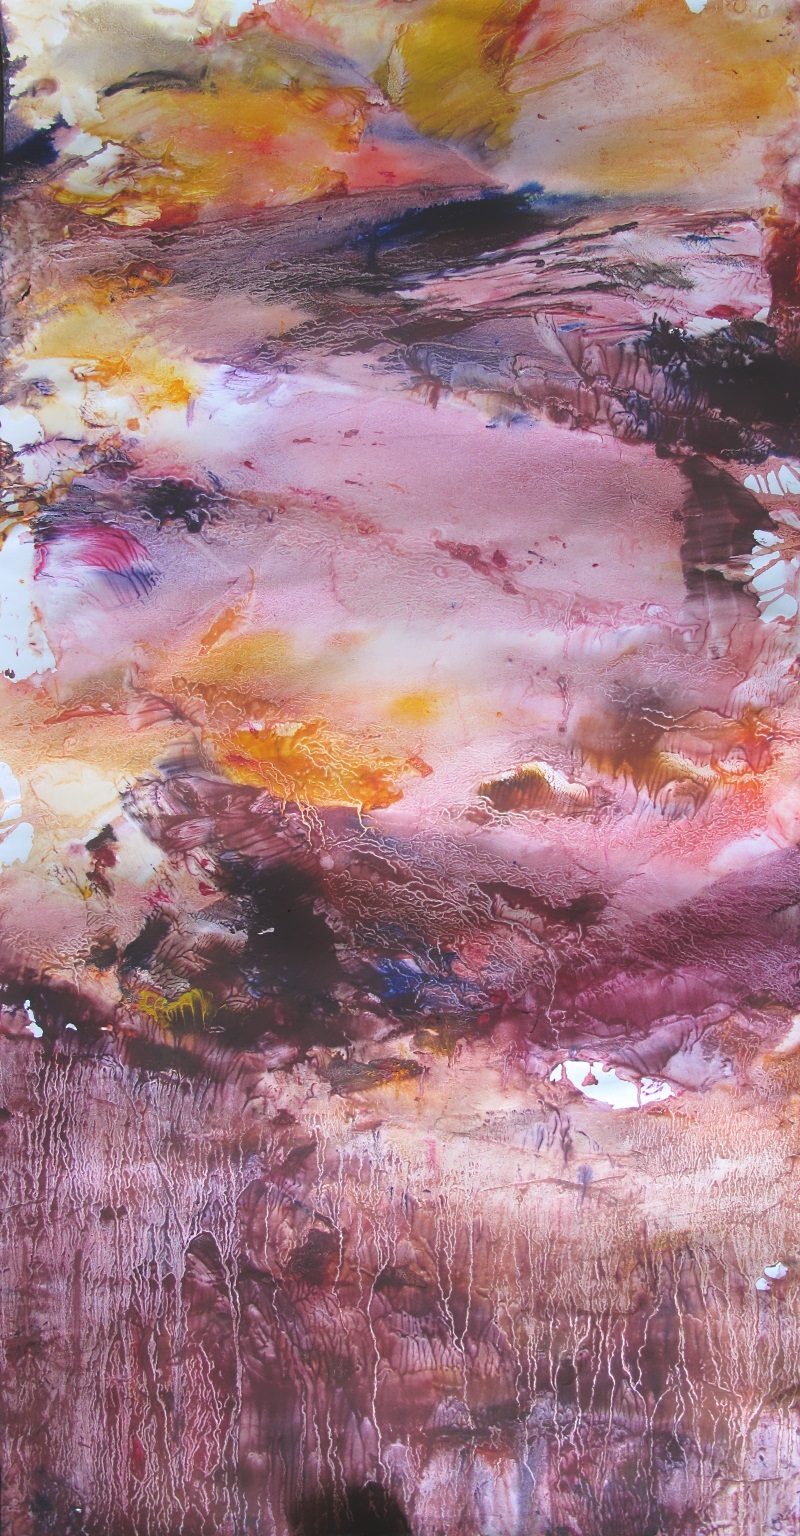 Ciel héroïque, tempera/paper/canvas, 150x75cm, 2015